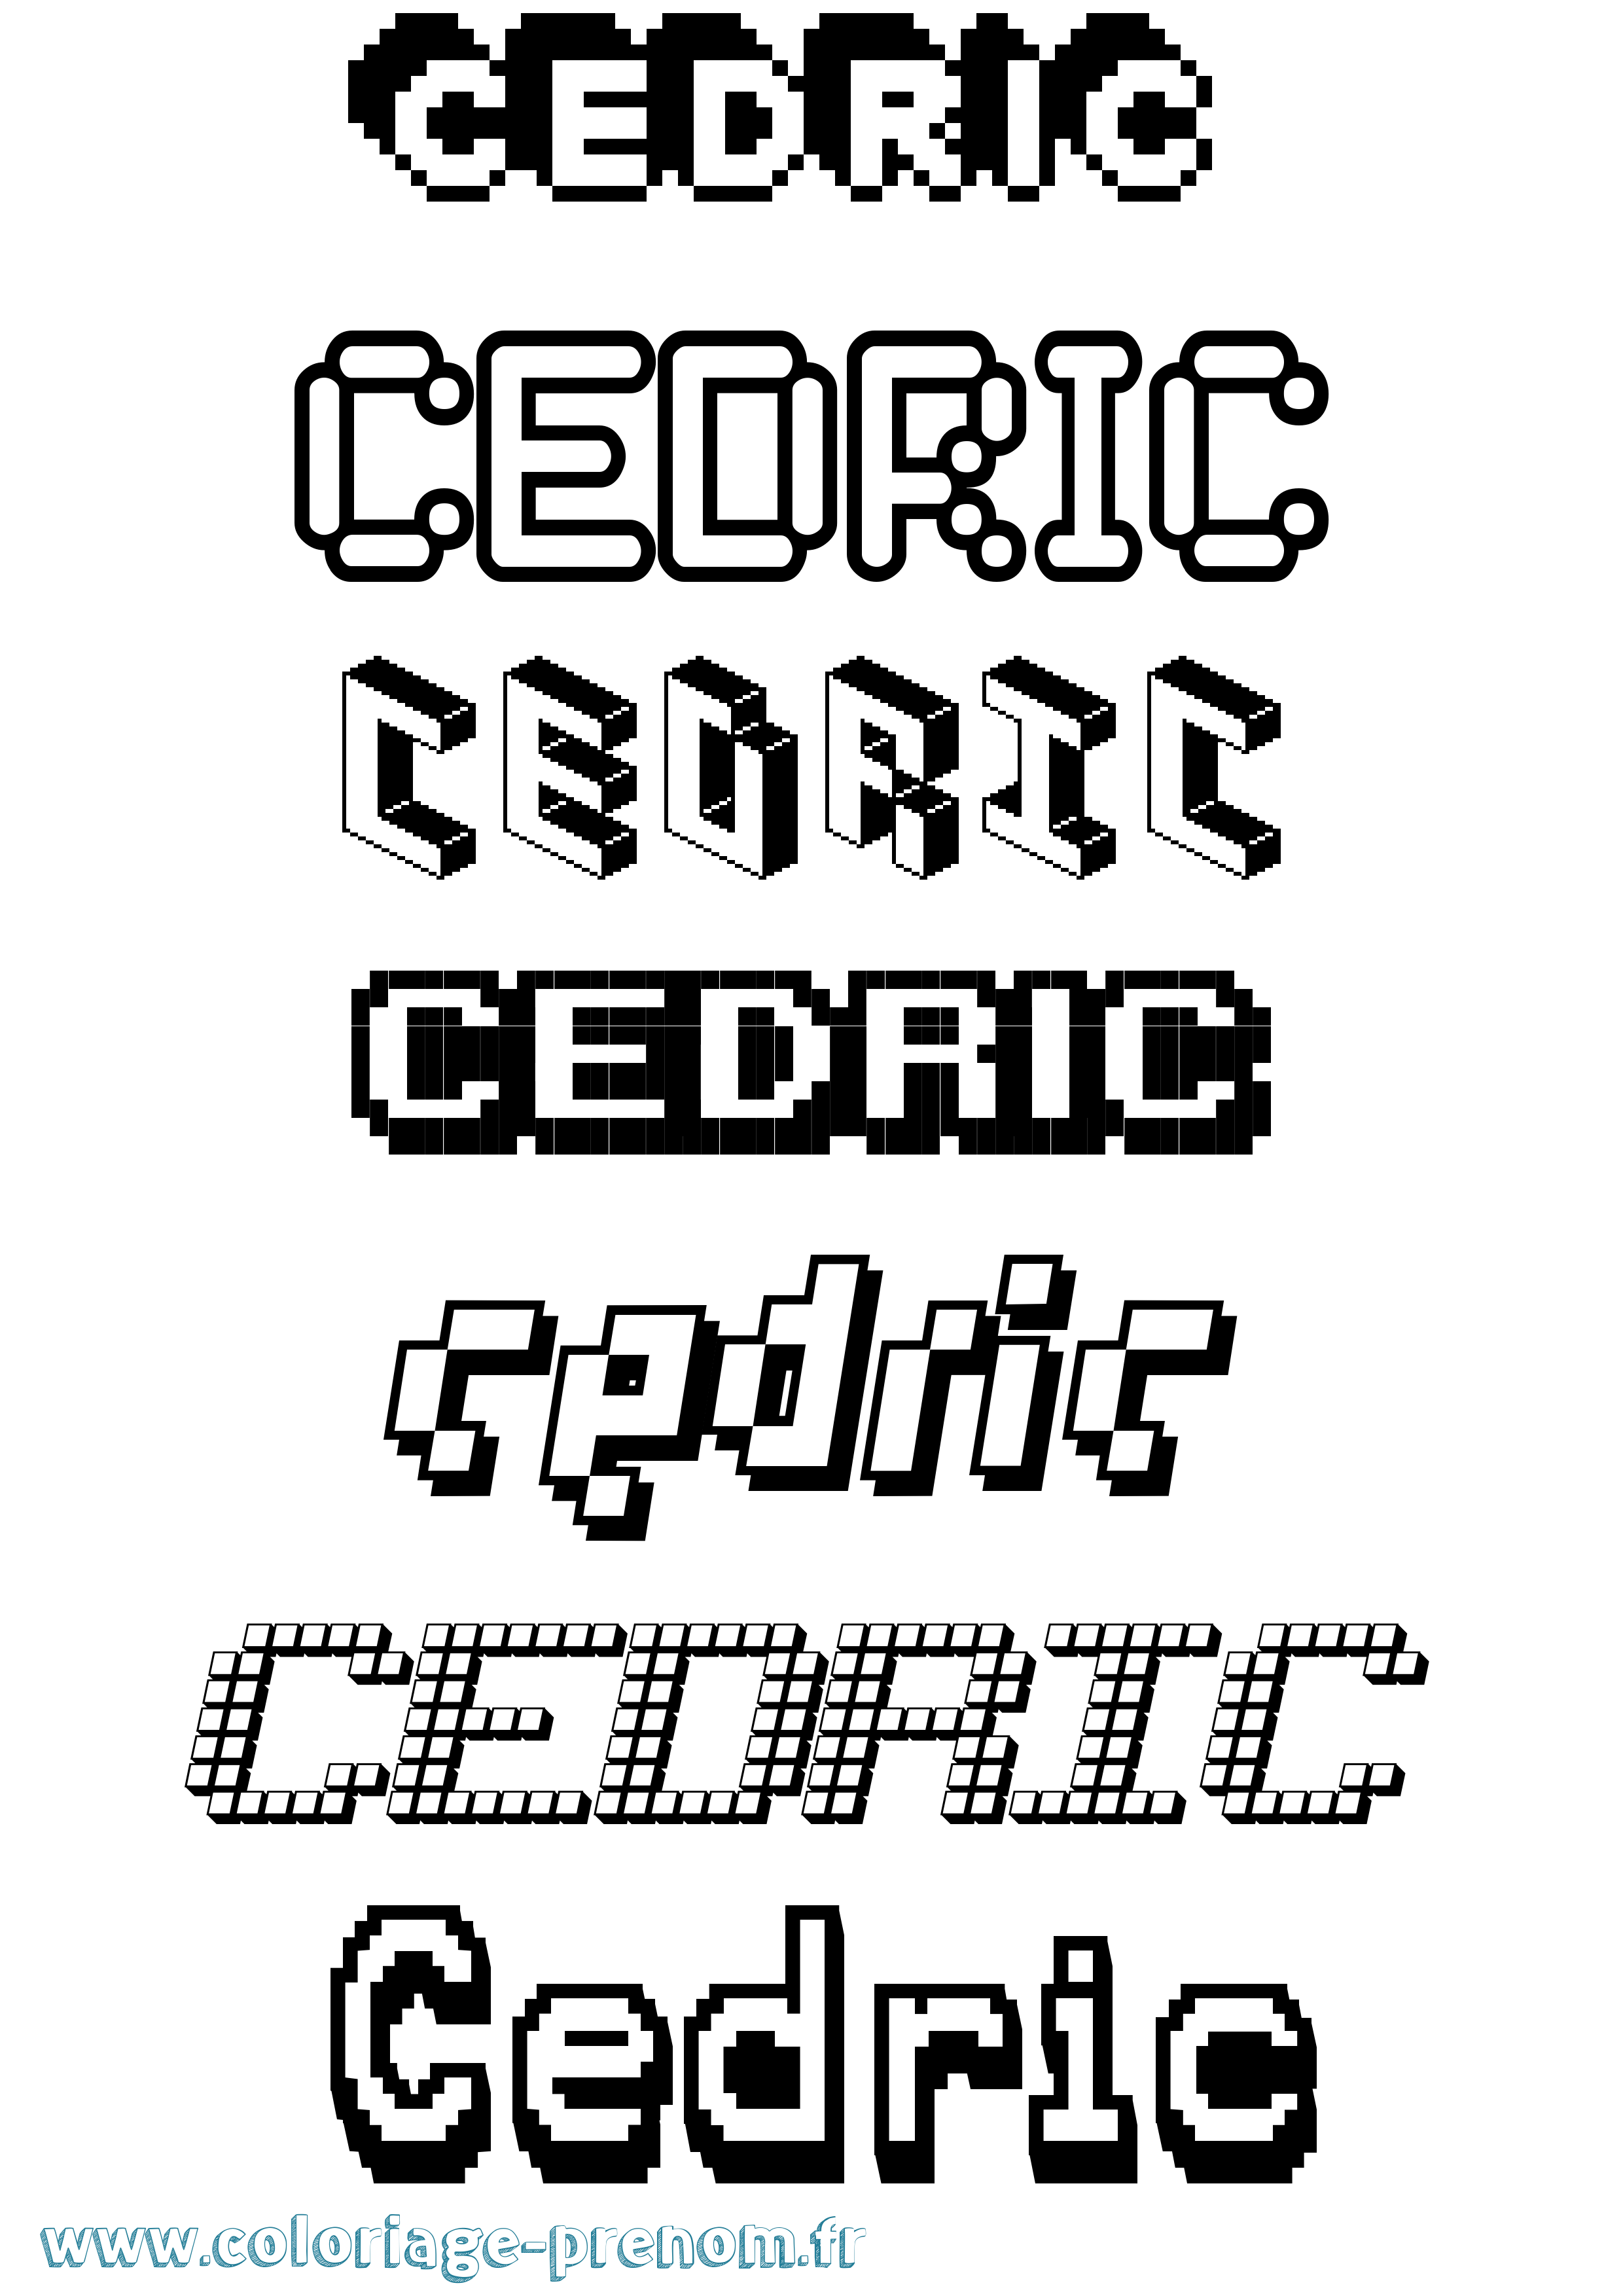 Coloriage prénom Cedric Pixel